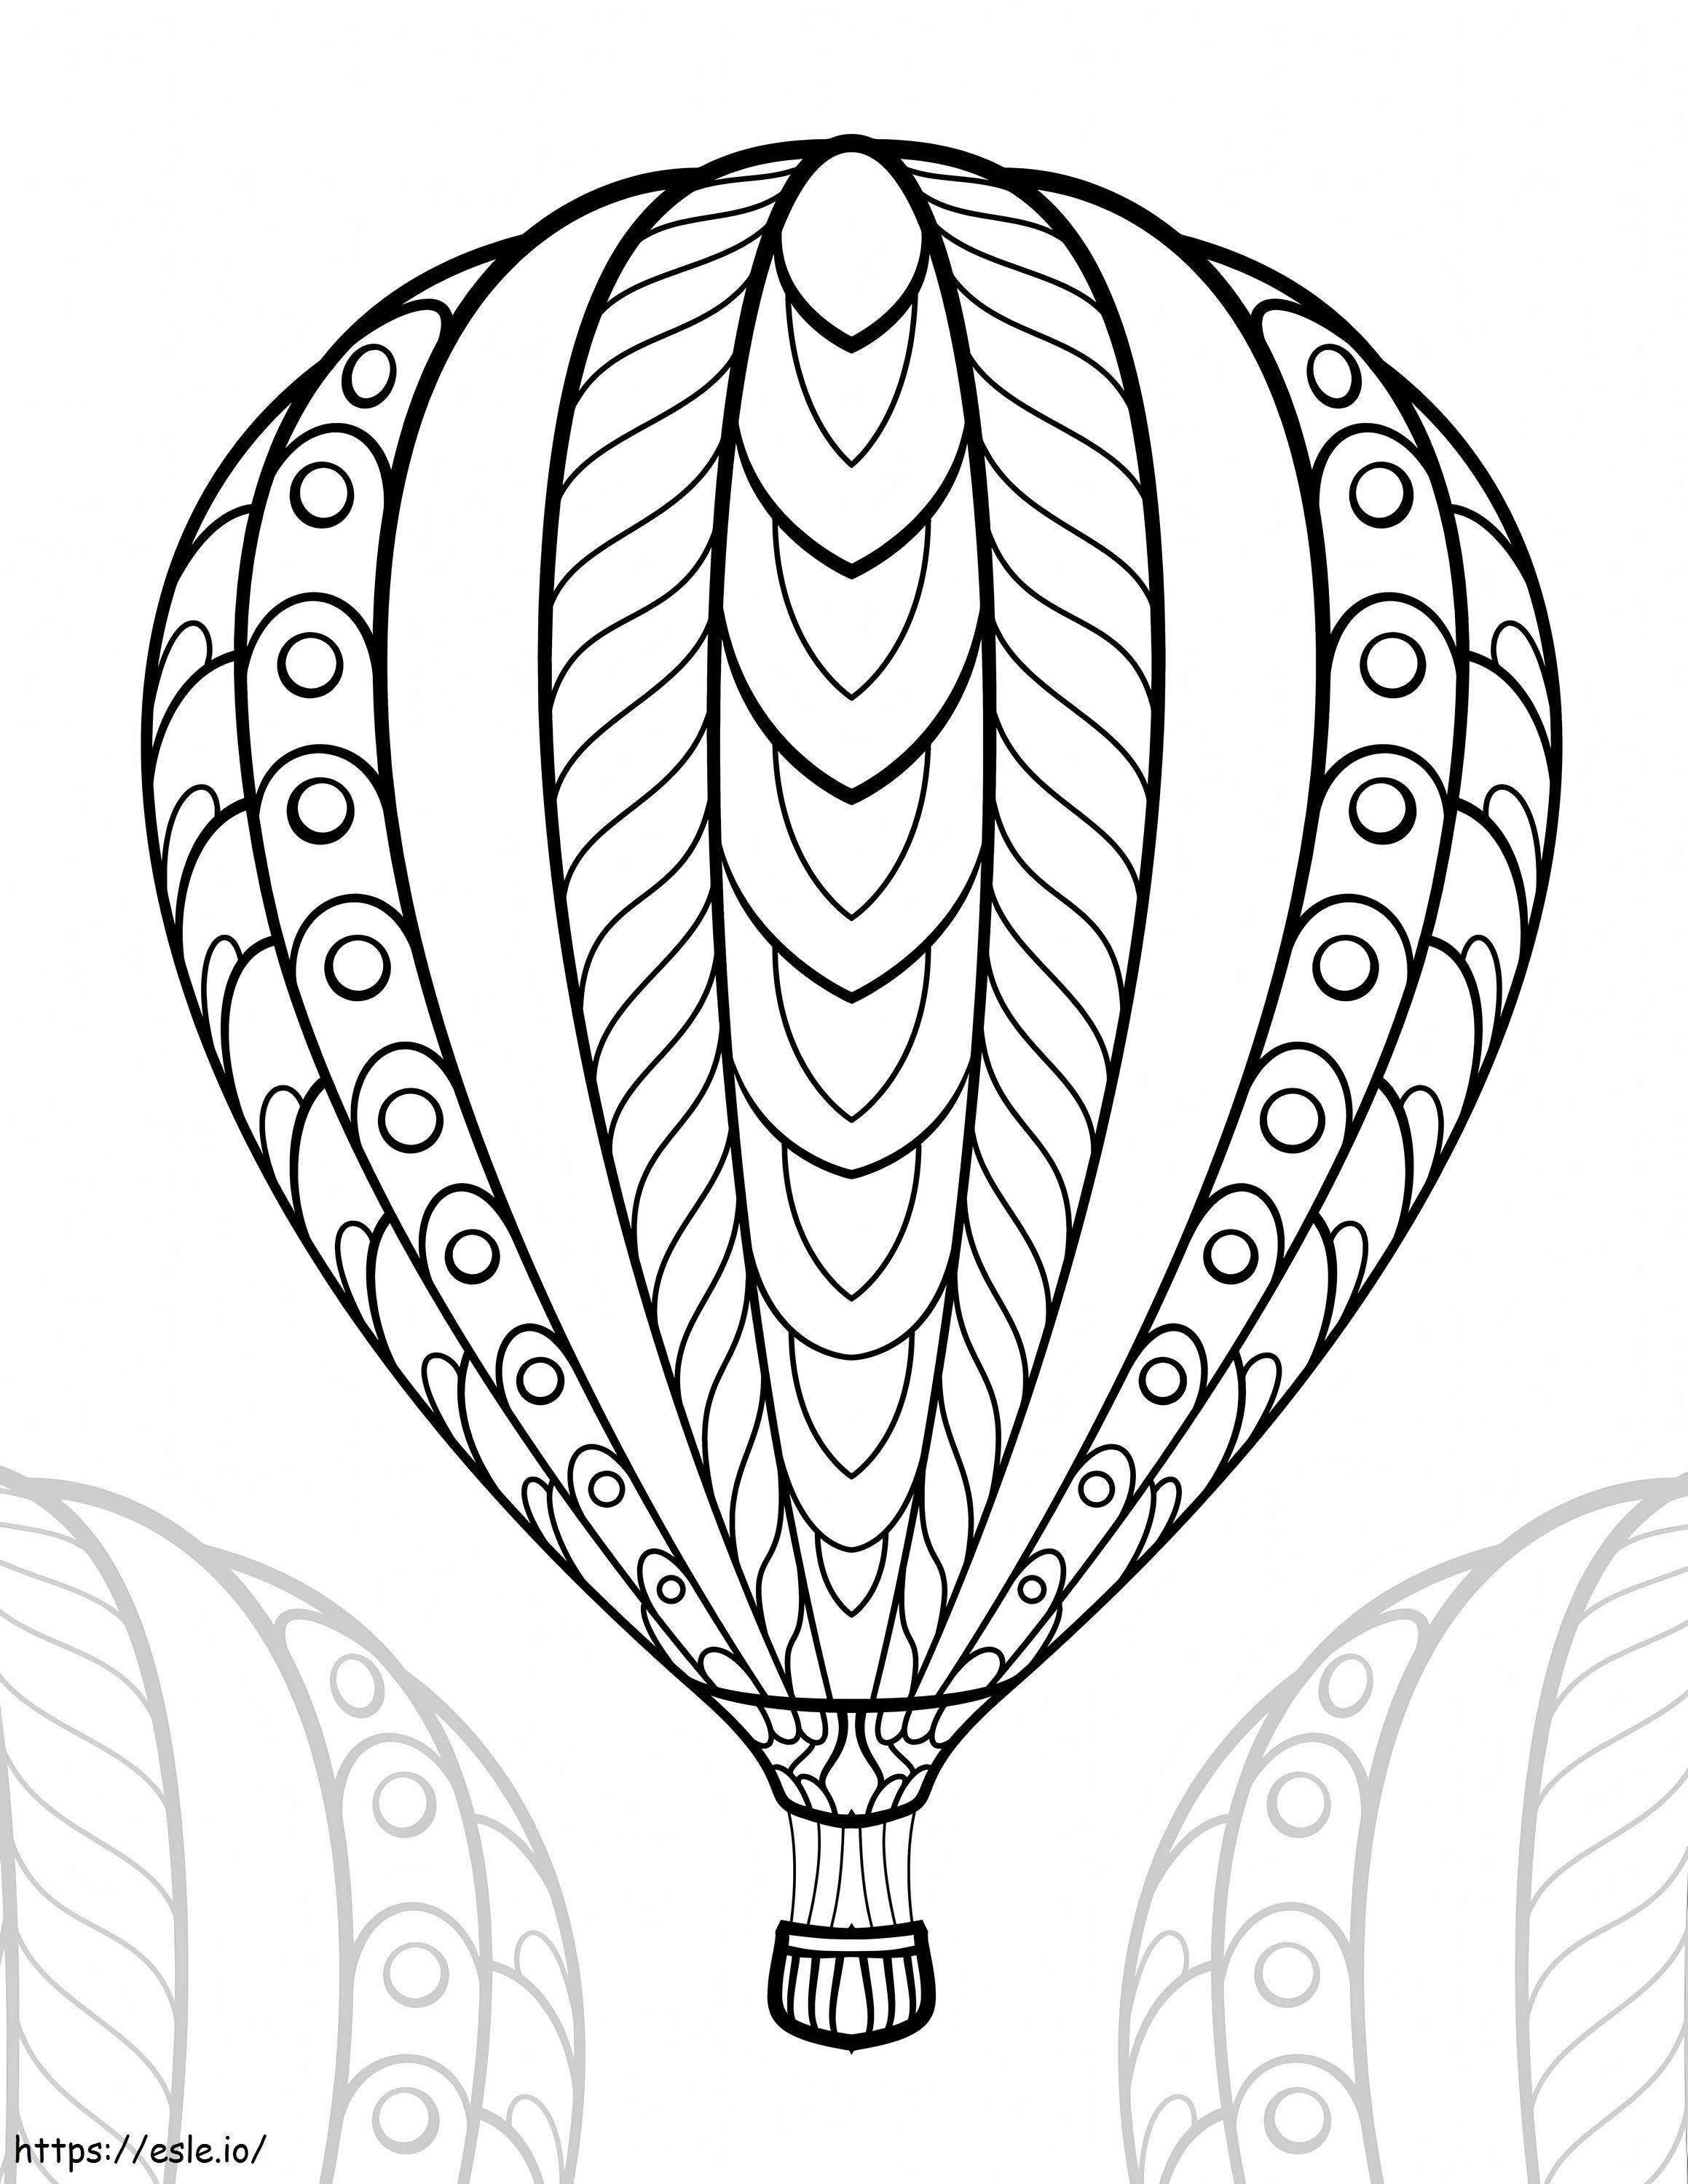 Heteluchtballonvaren is voor volwassenen kleurplaat kleurplaat